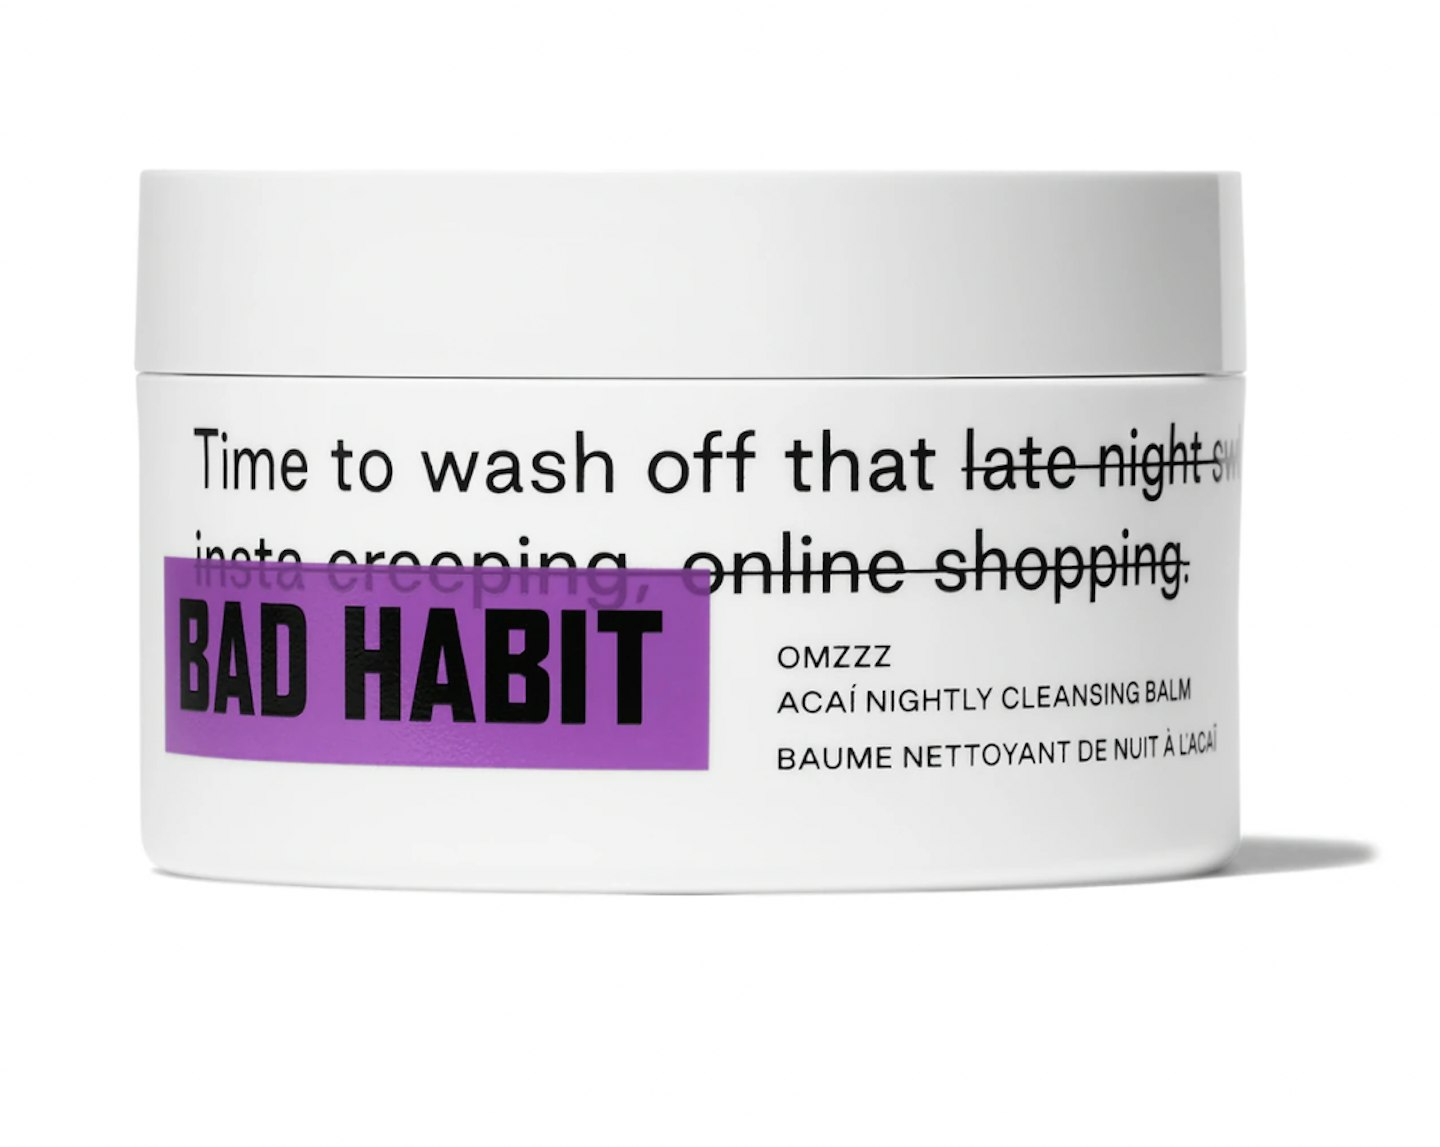 Bad Habit Omzz Acai Nightly Cleansing Balm